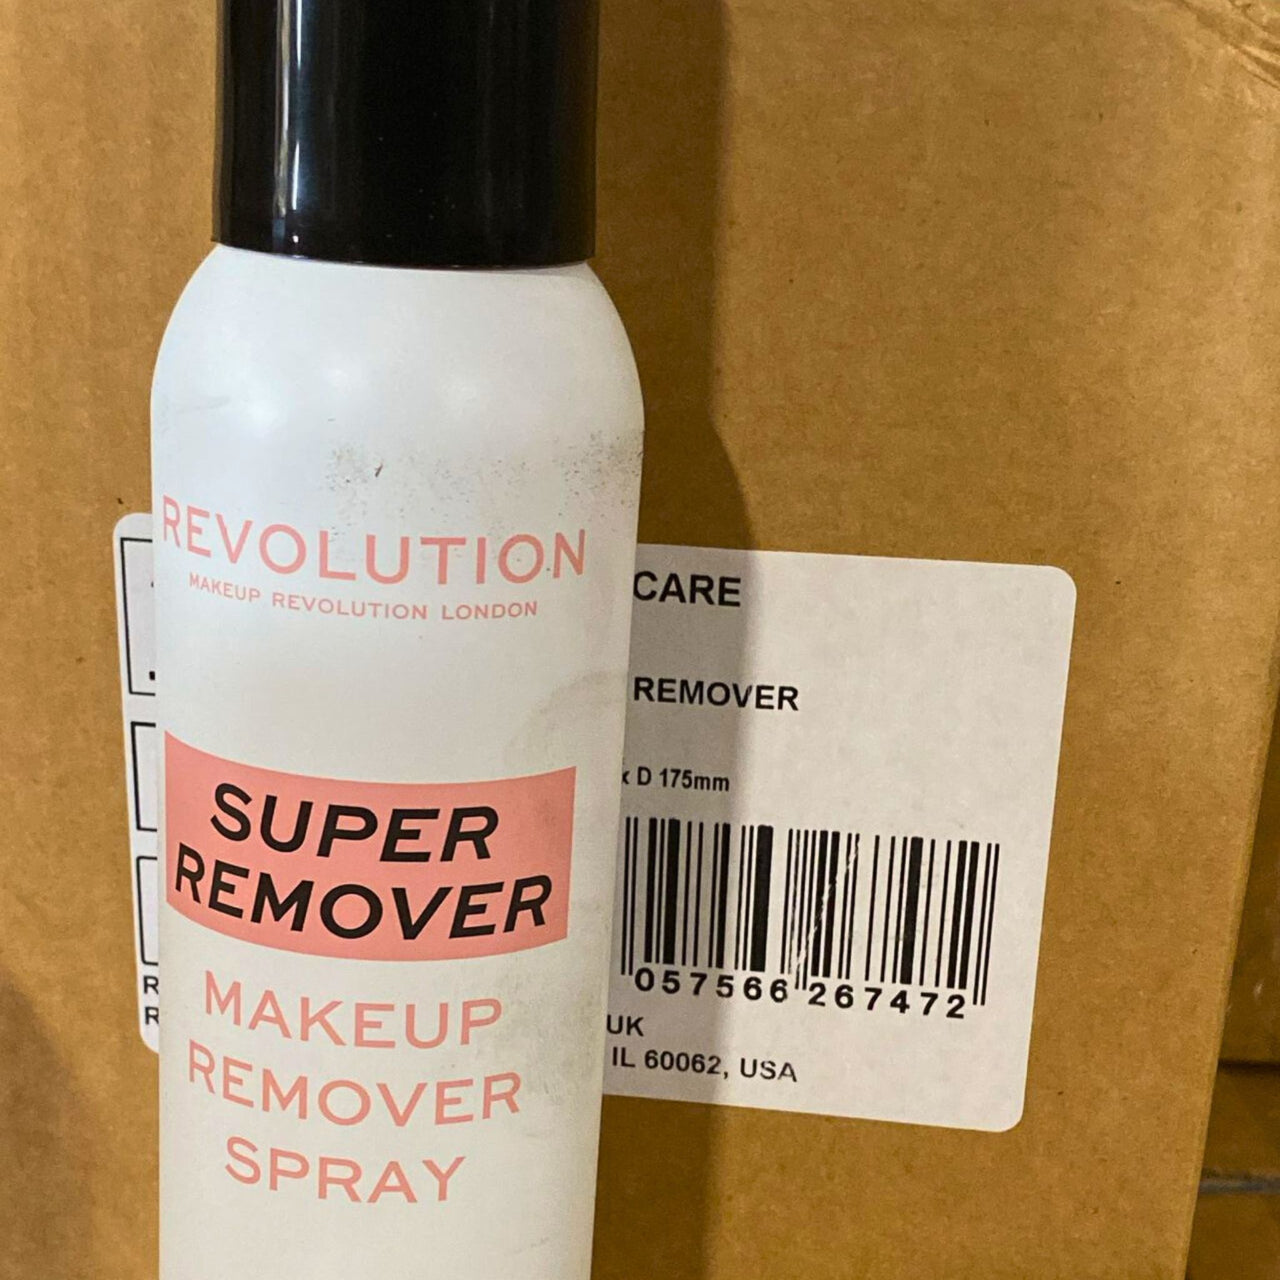 Revolution Super Remover Makeup Remover Spray Vitamin E 